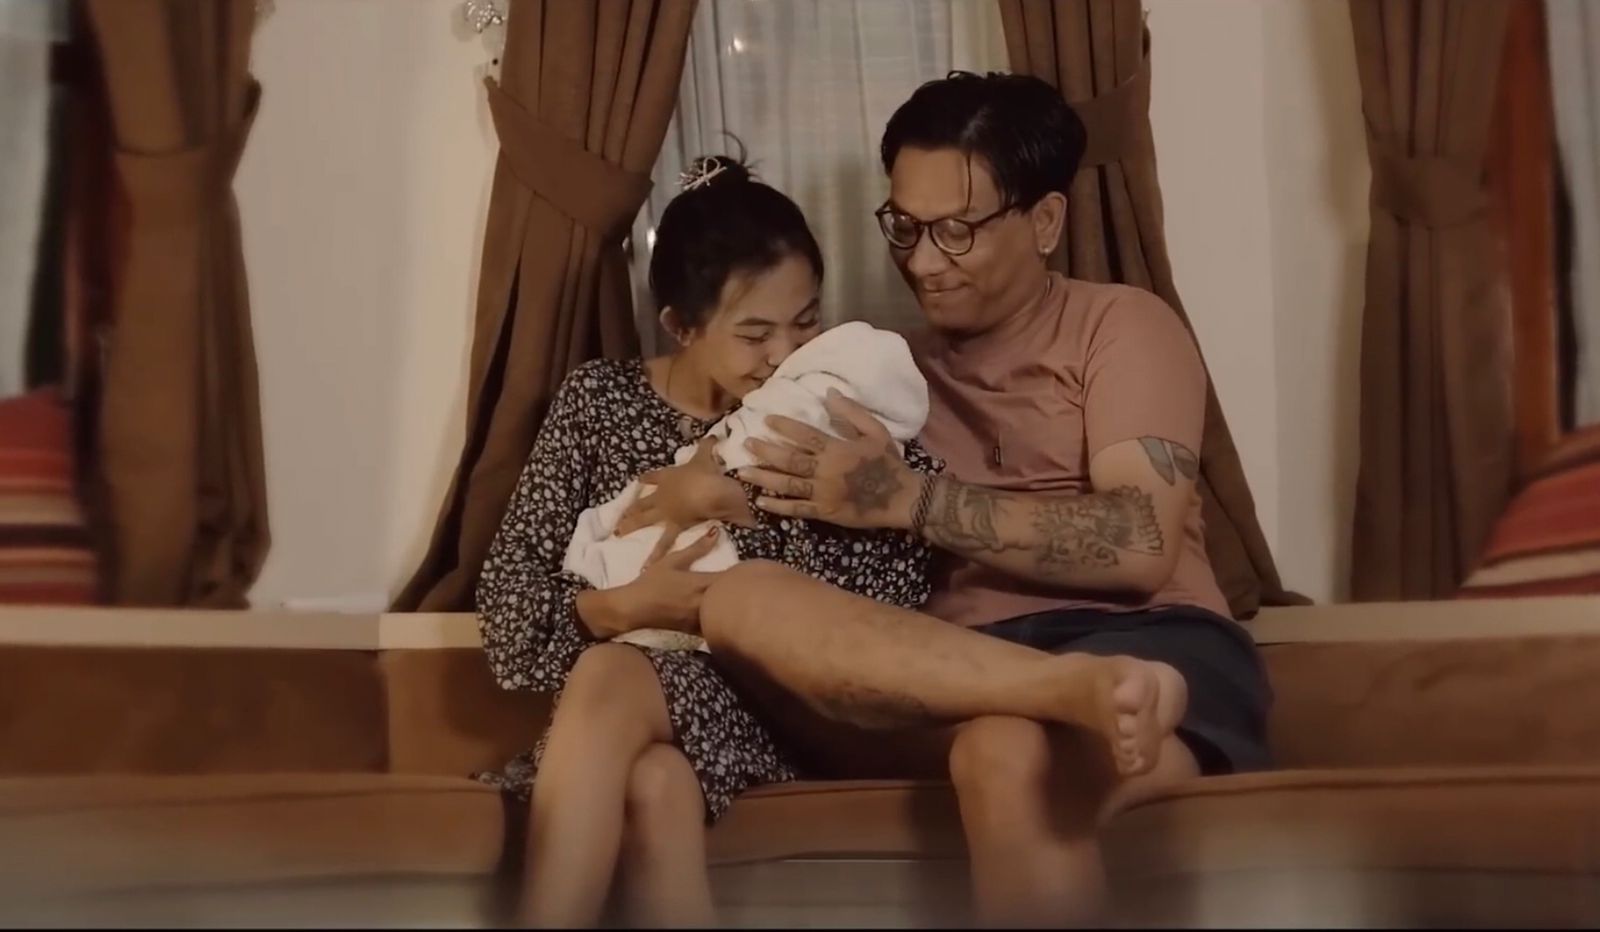  Lagu Batas Senja 'Ingin Punya Rumah Tuk Tempat Bermesra' Viral di TikTok, Ini Liriknya